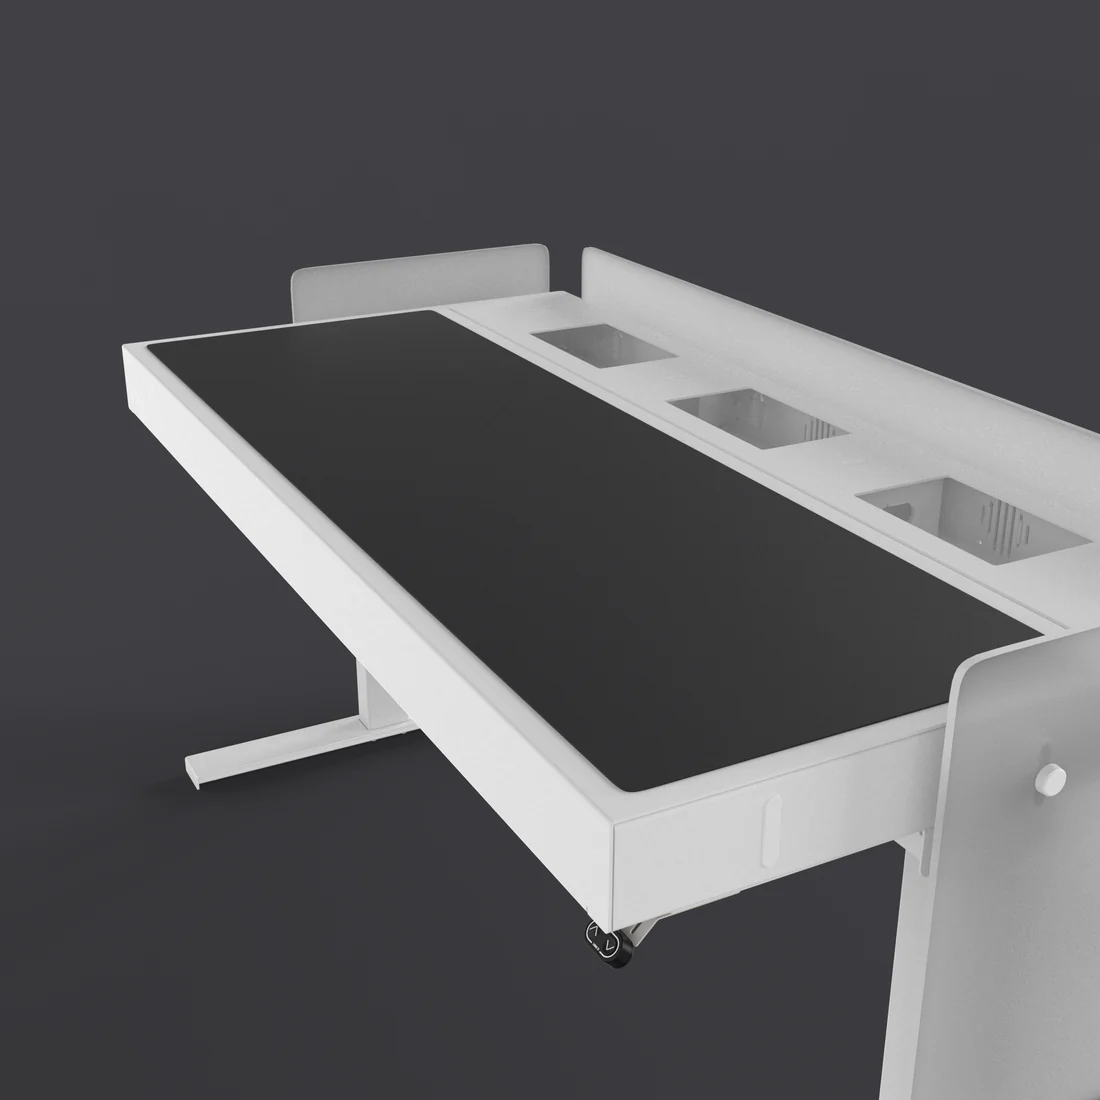 H902-4166 Desk Pad - Charcoal